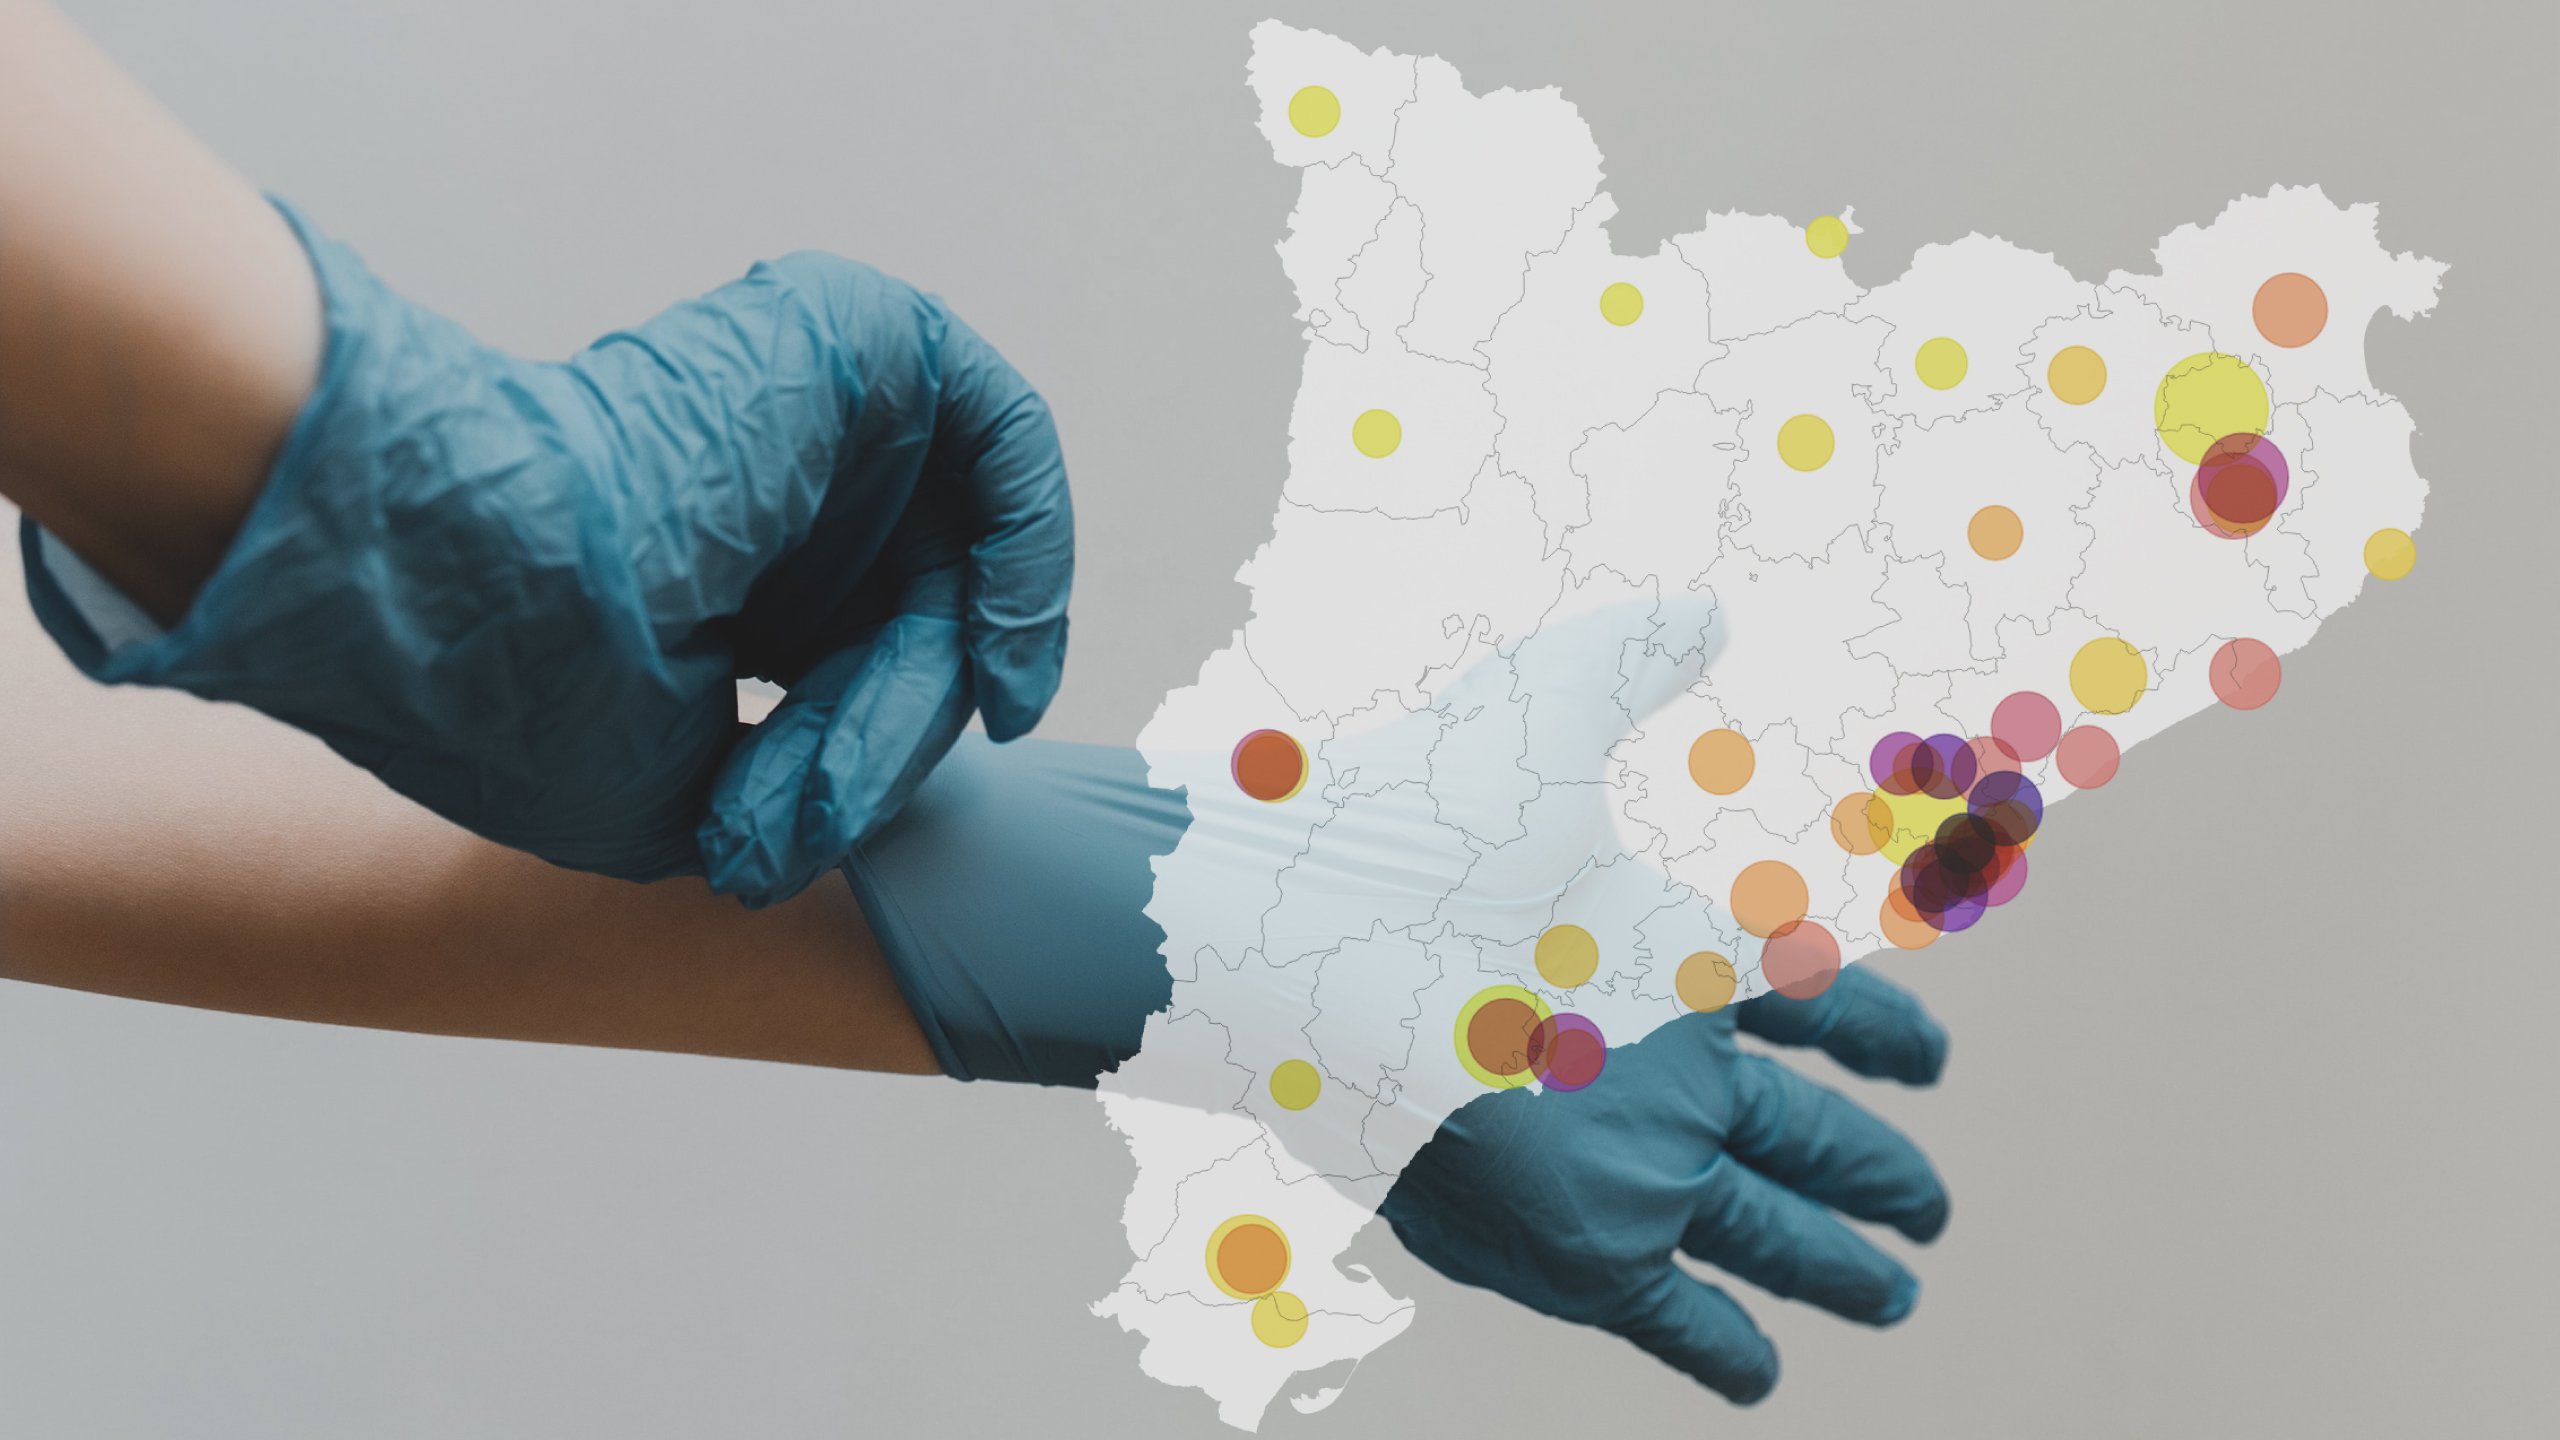 Mapa de Catalunya amb les llistes d'espera al sistema sanitari / foto: clay banks, mapa: laura cercós